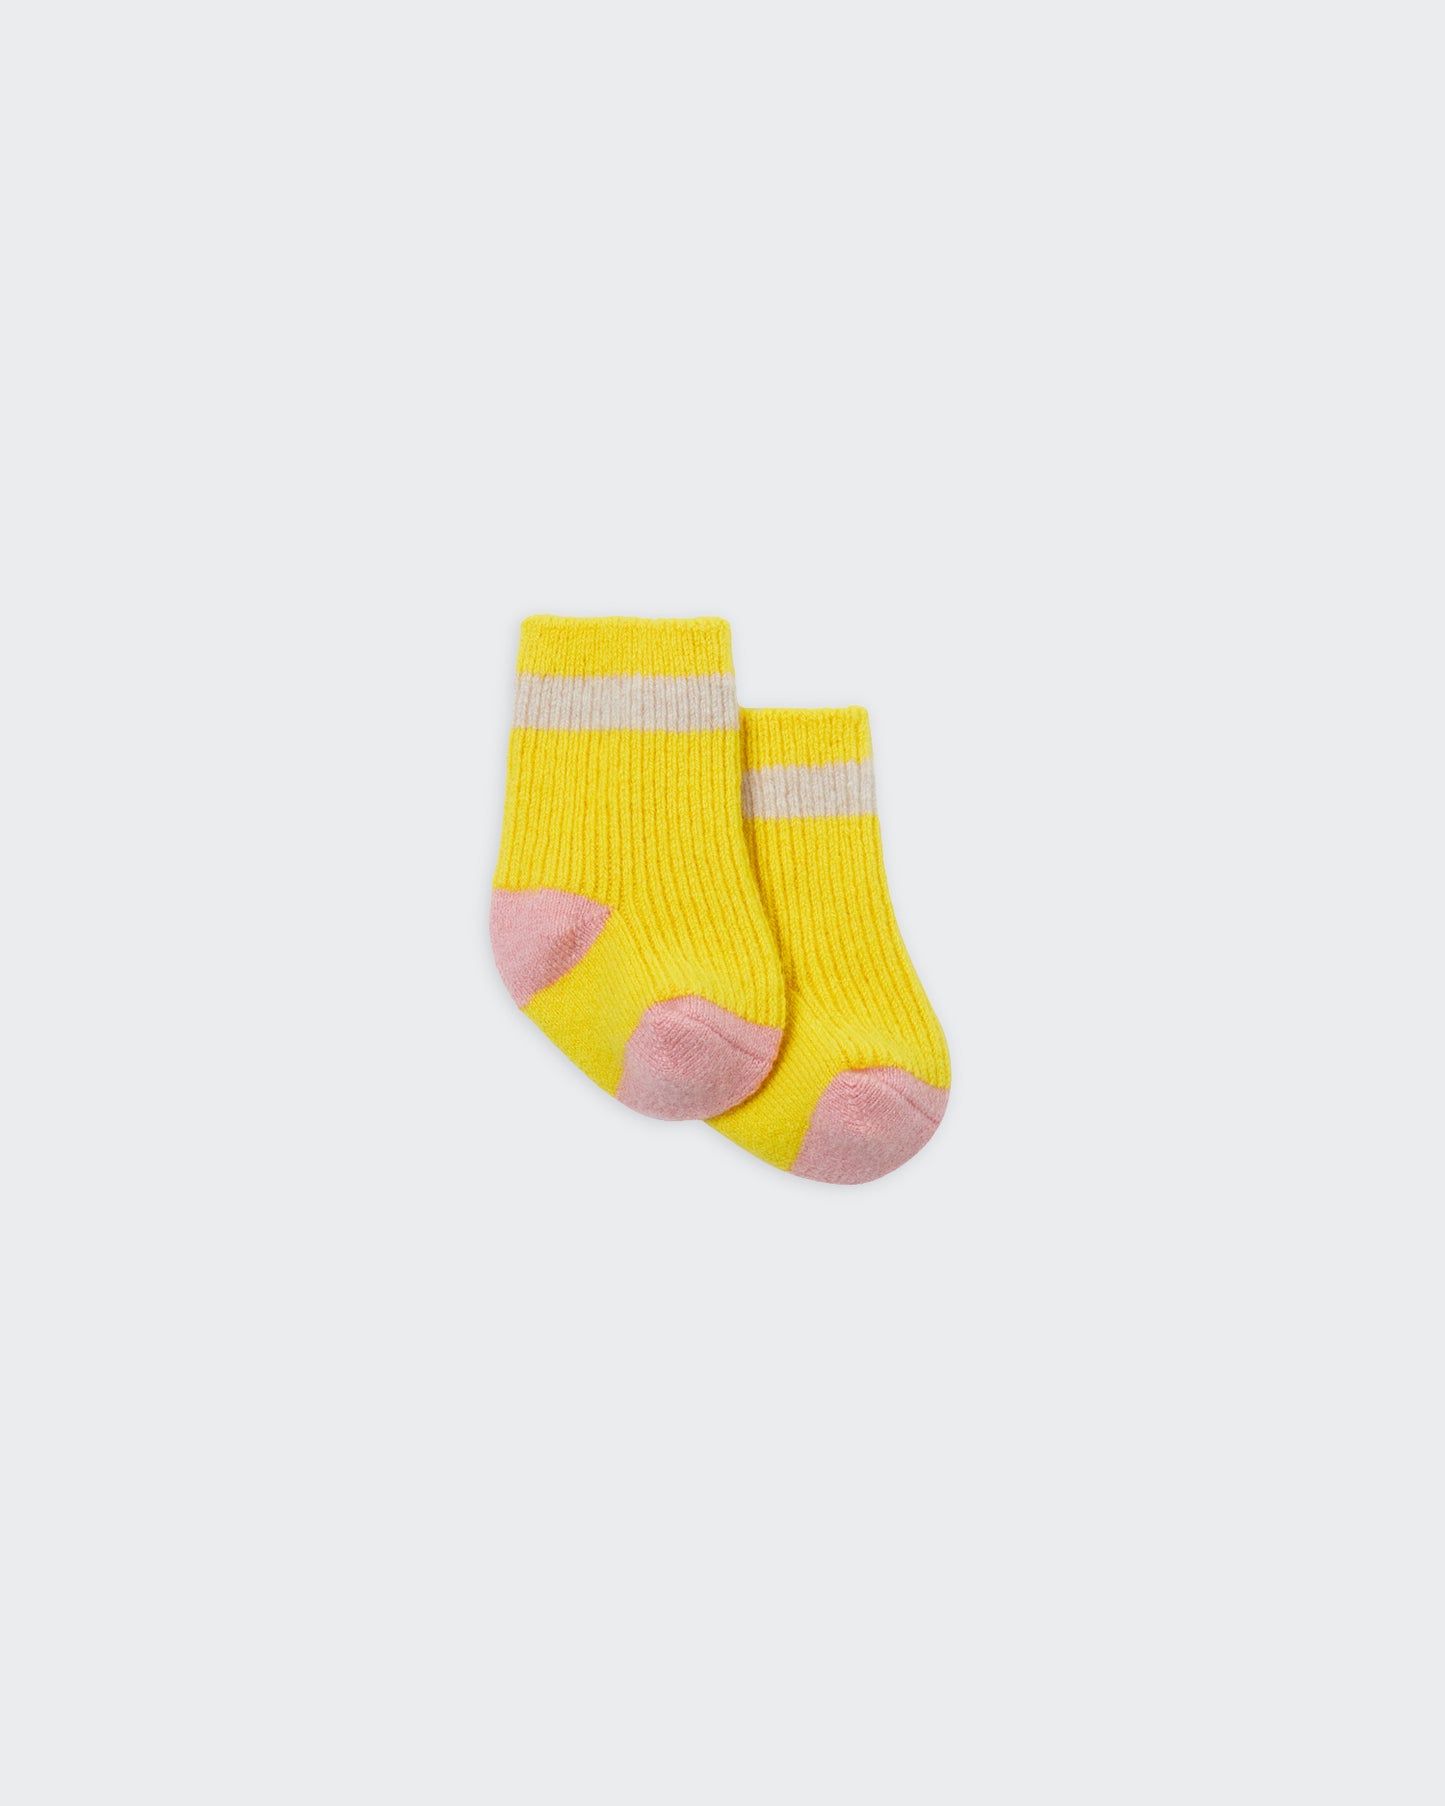 The Mini Soft Socks (3-Pack) - Blush Combo